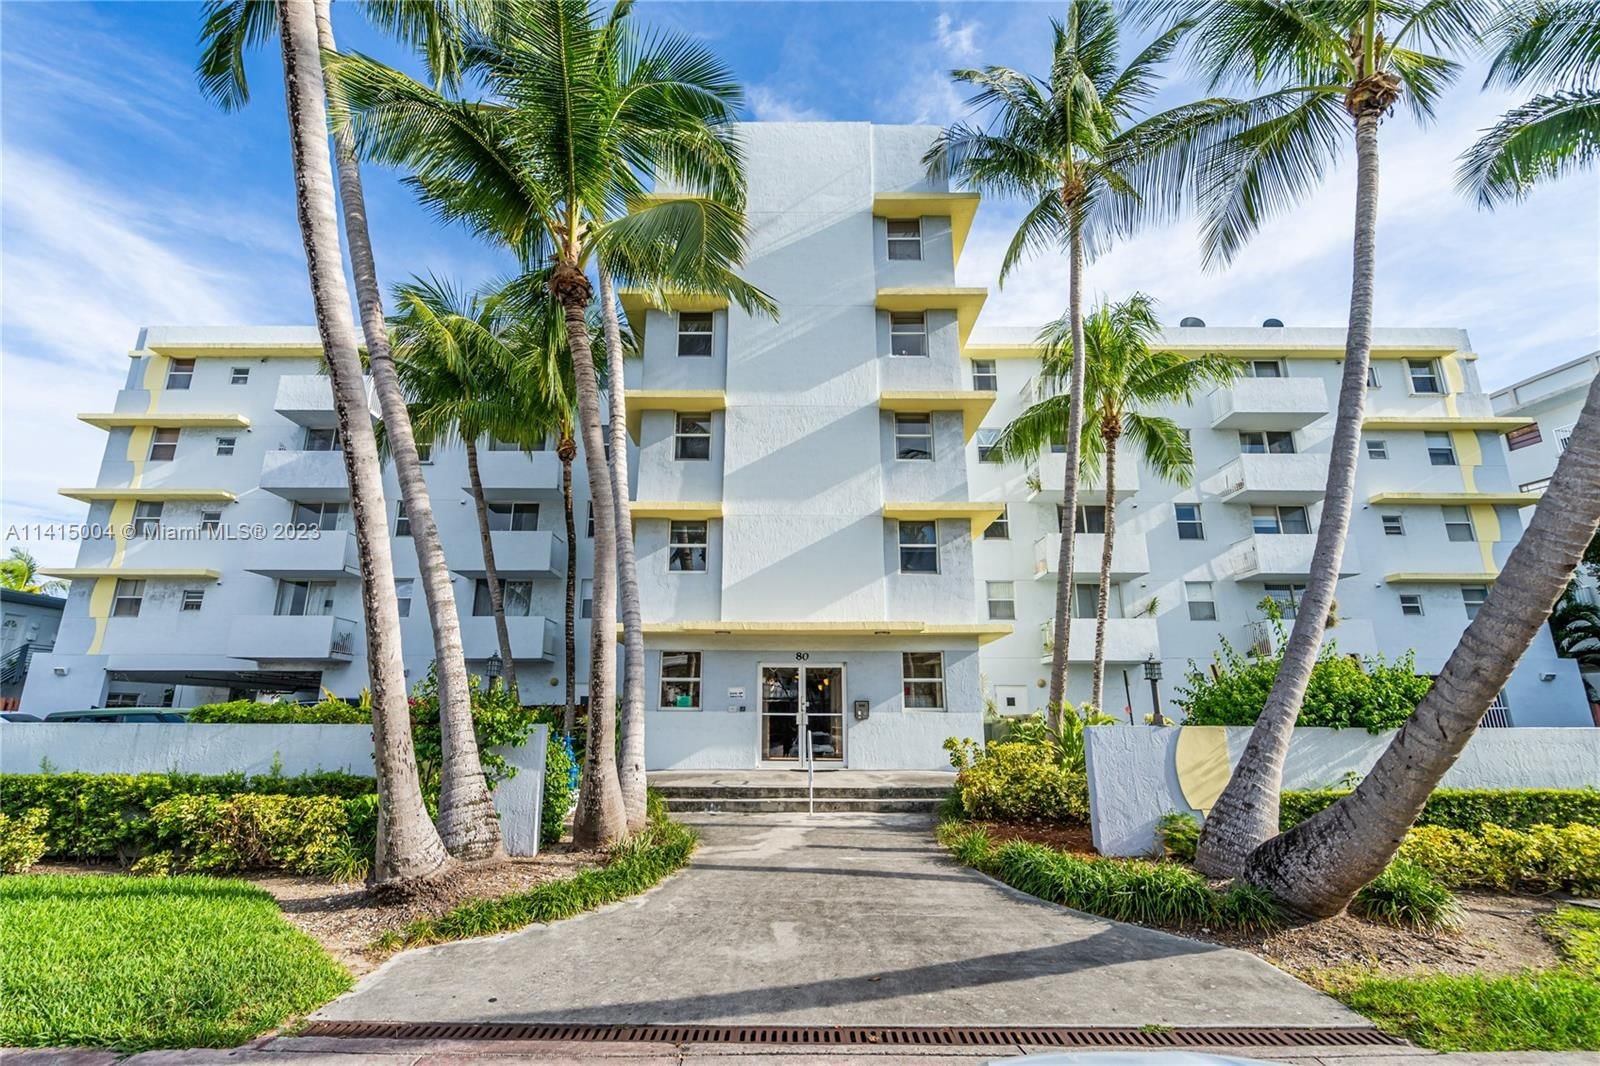 Real estate property located at 80 Shore Dr #308, Miami-Dade County, CORAL BAY CLUB CONDO, Miami Beach, FL